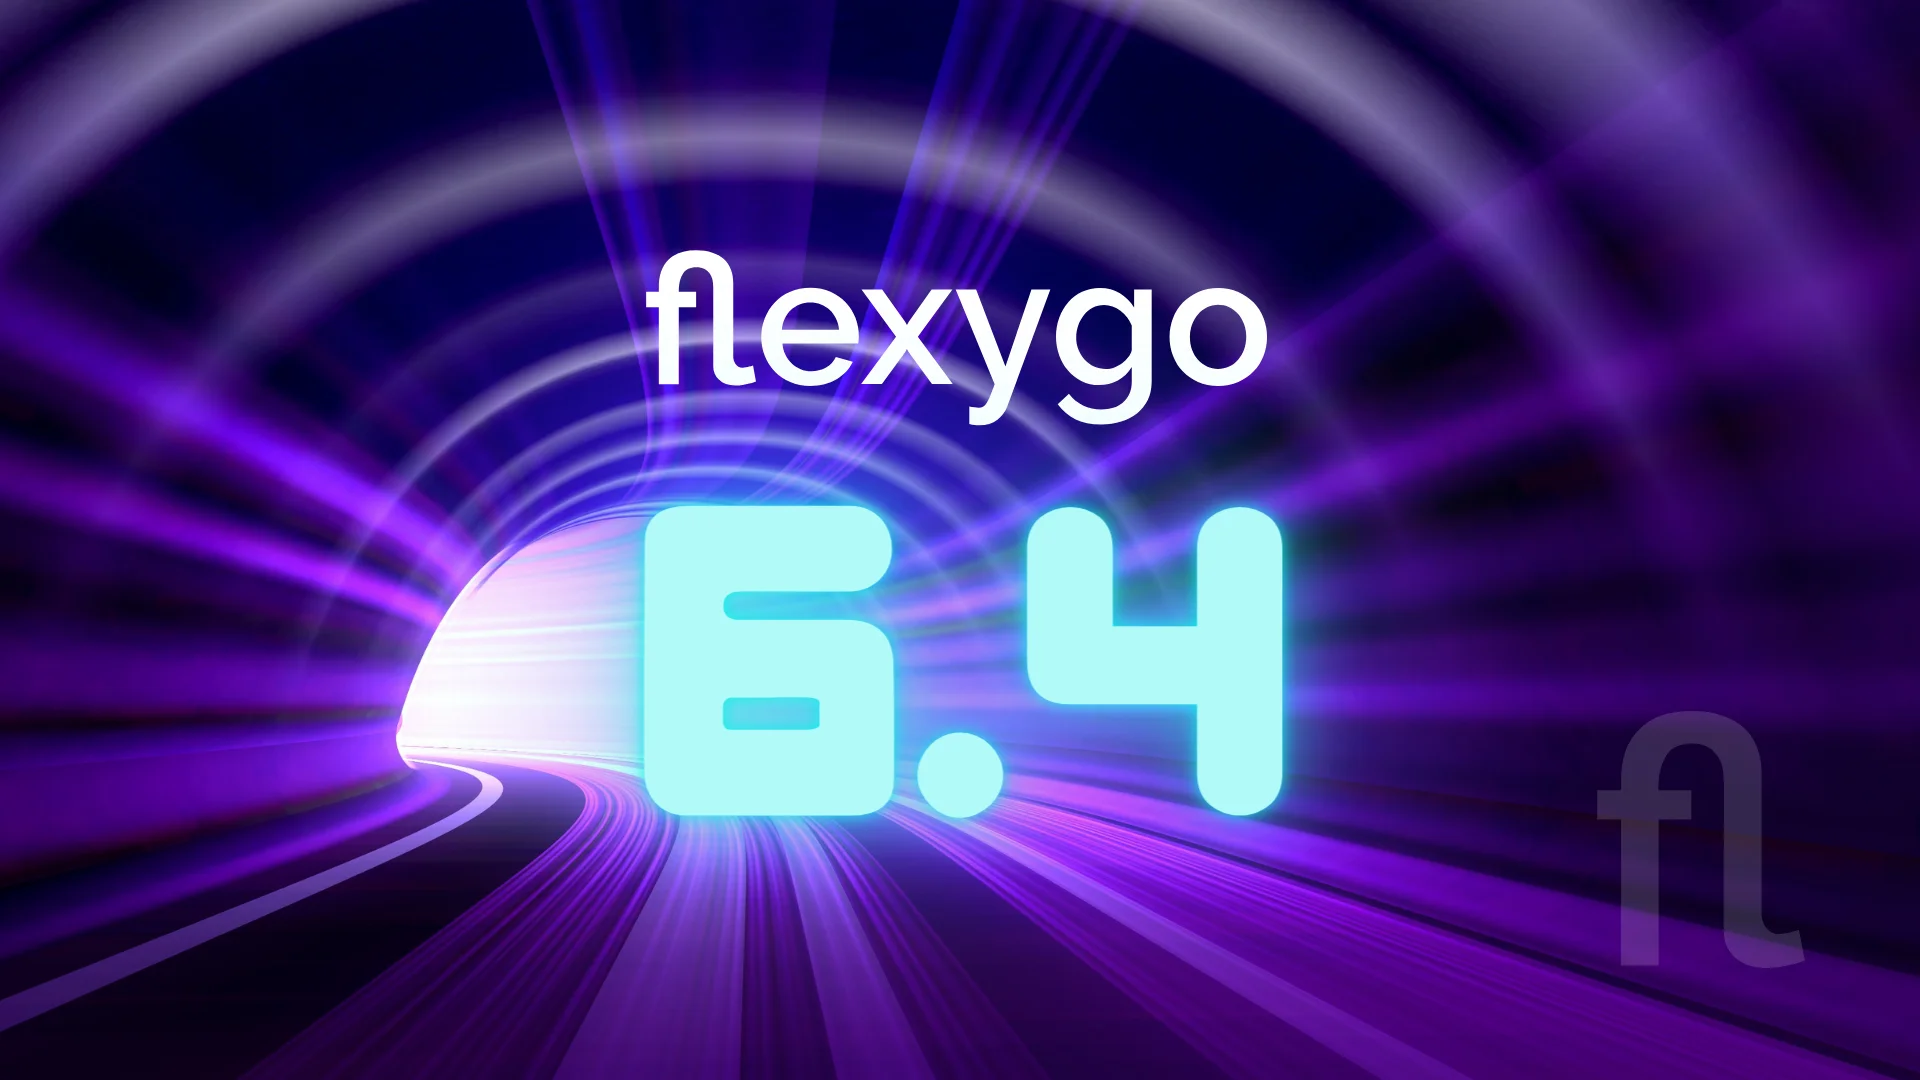 flexygo v6.4 lowcode